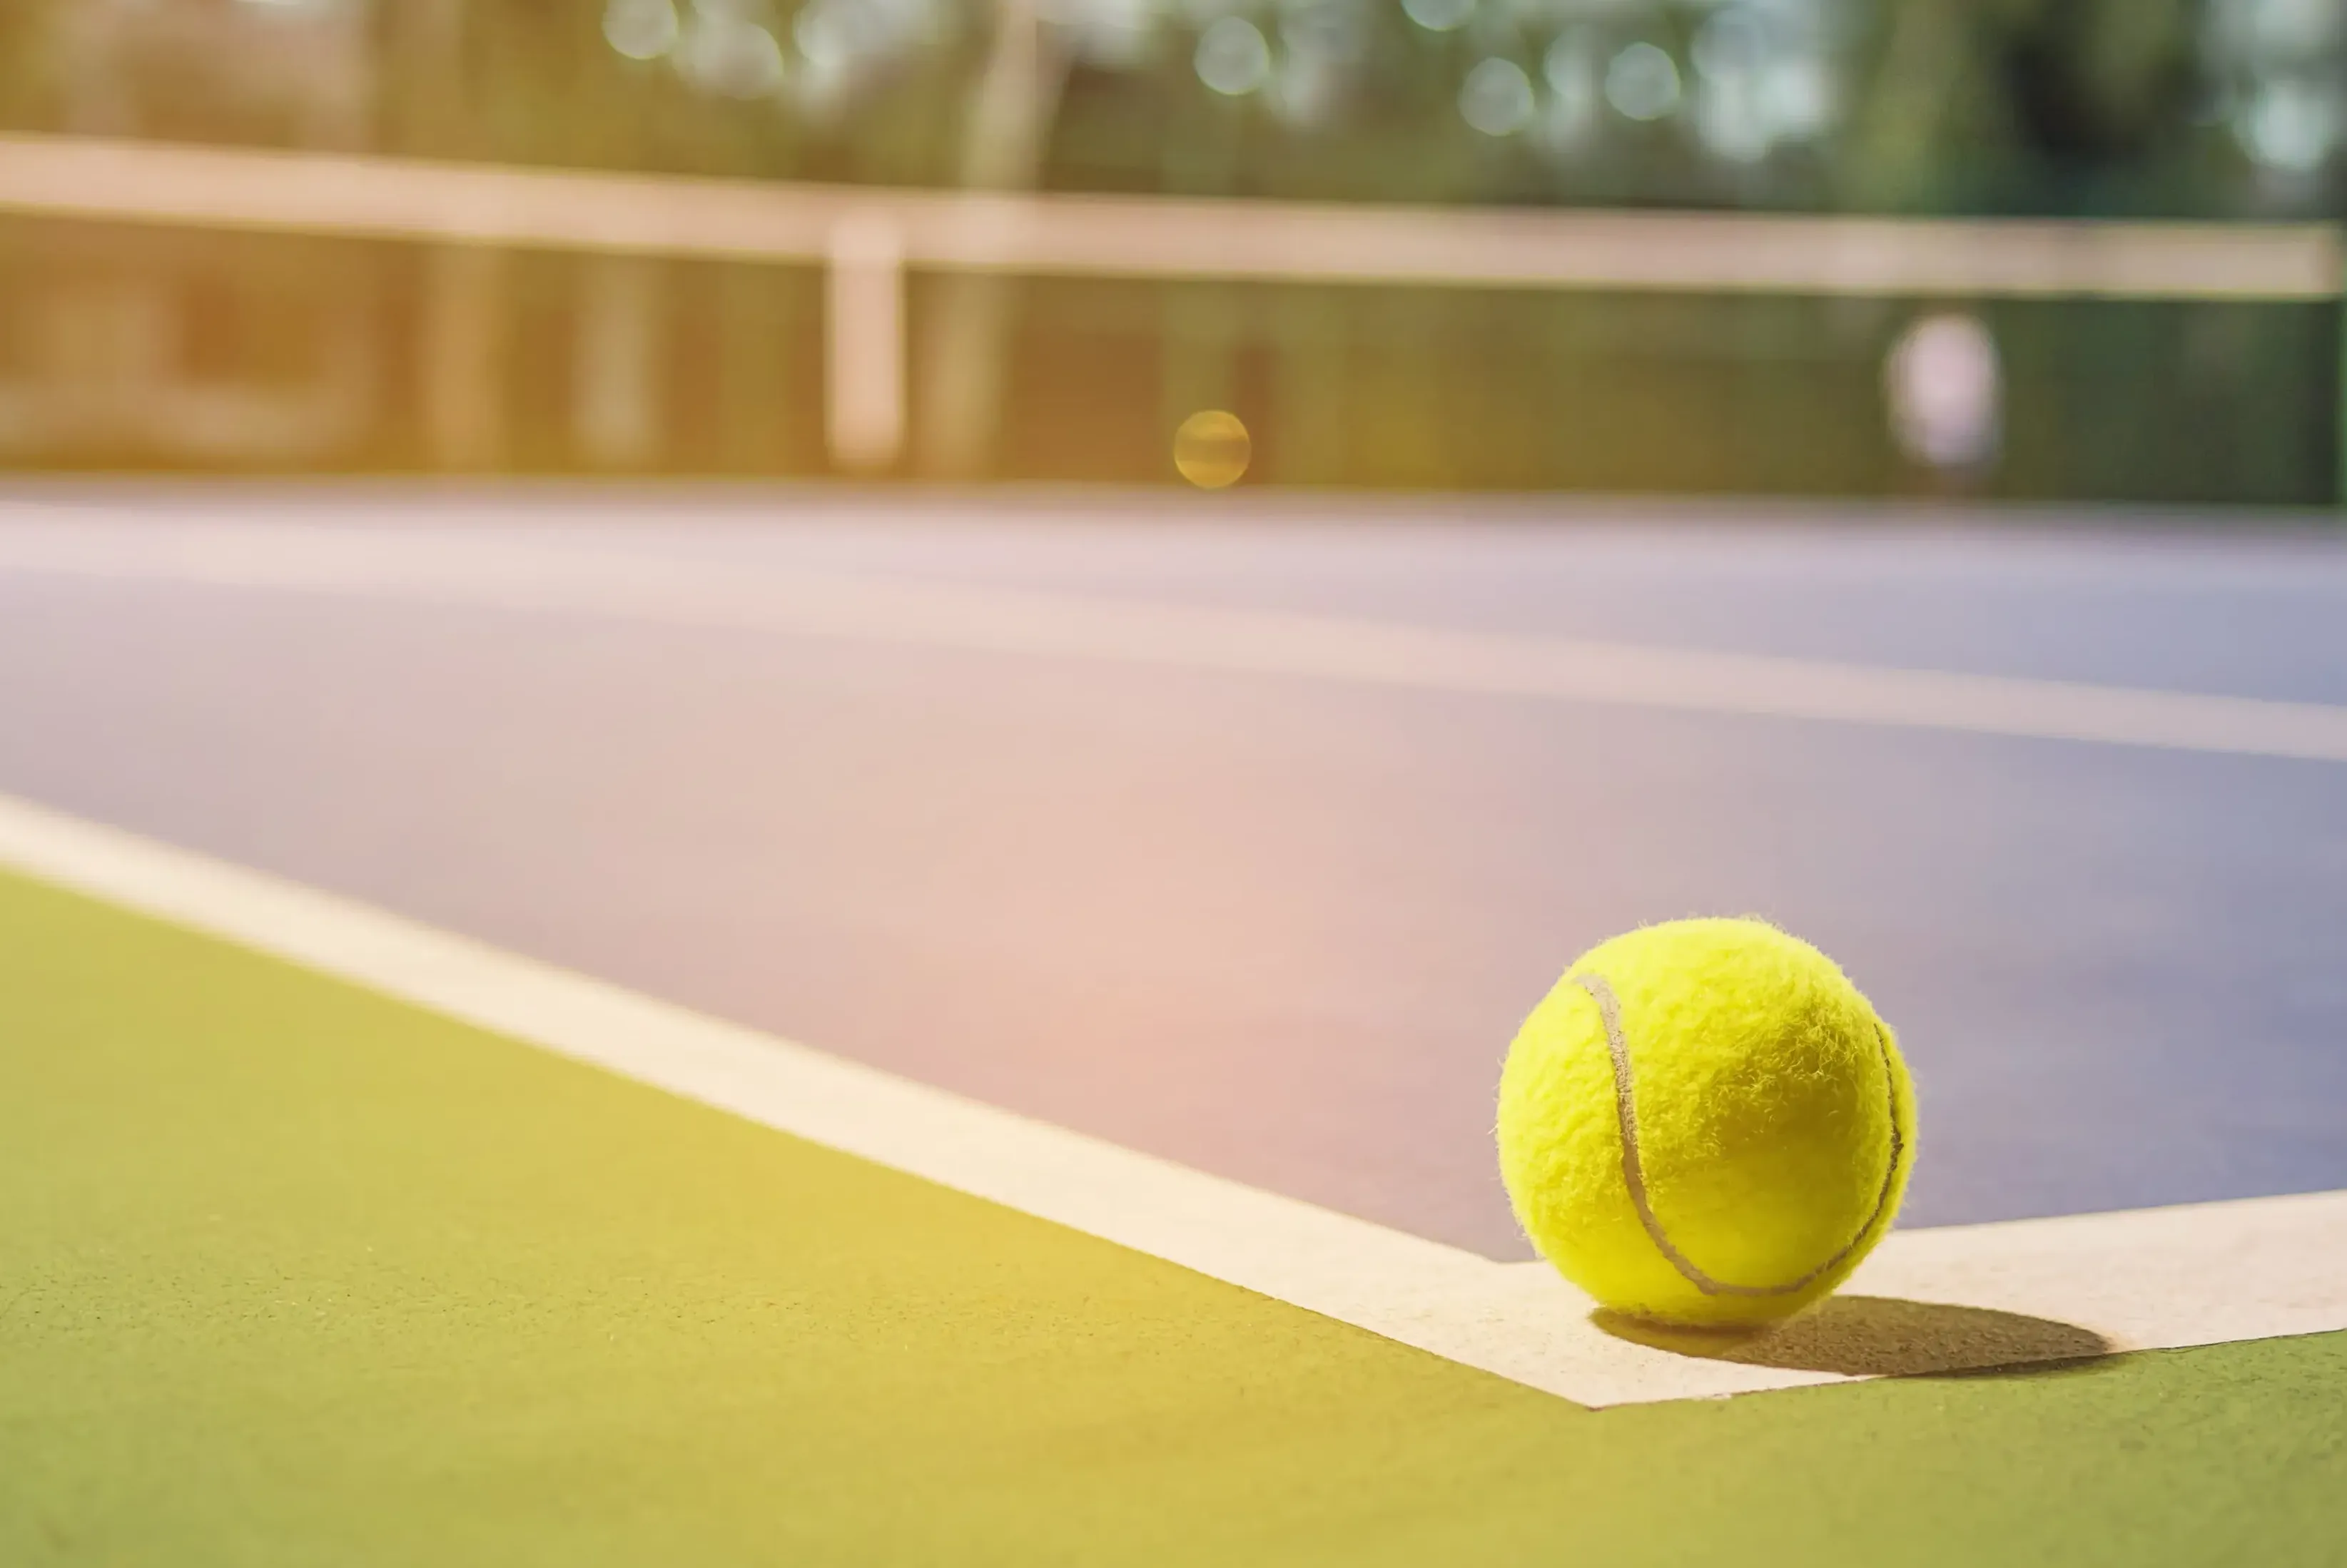 Torneio é considerado um dos torneios mais tradicionais do tênis